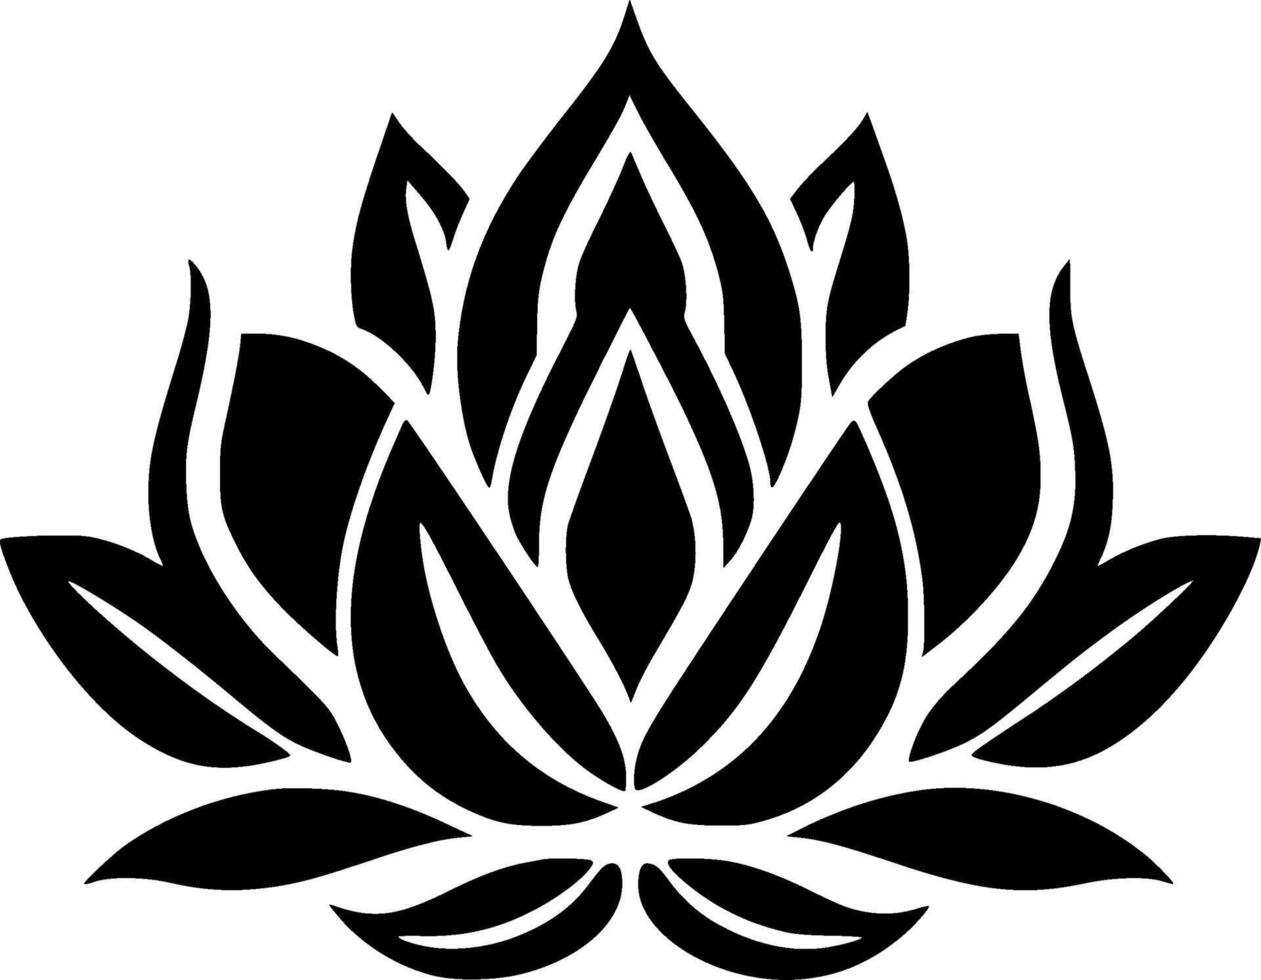 Lotus Flower, Black and White Vector illustration